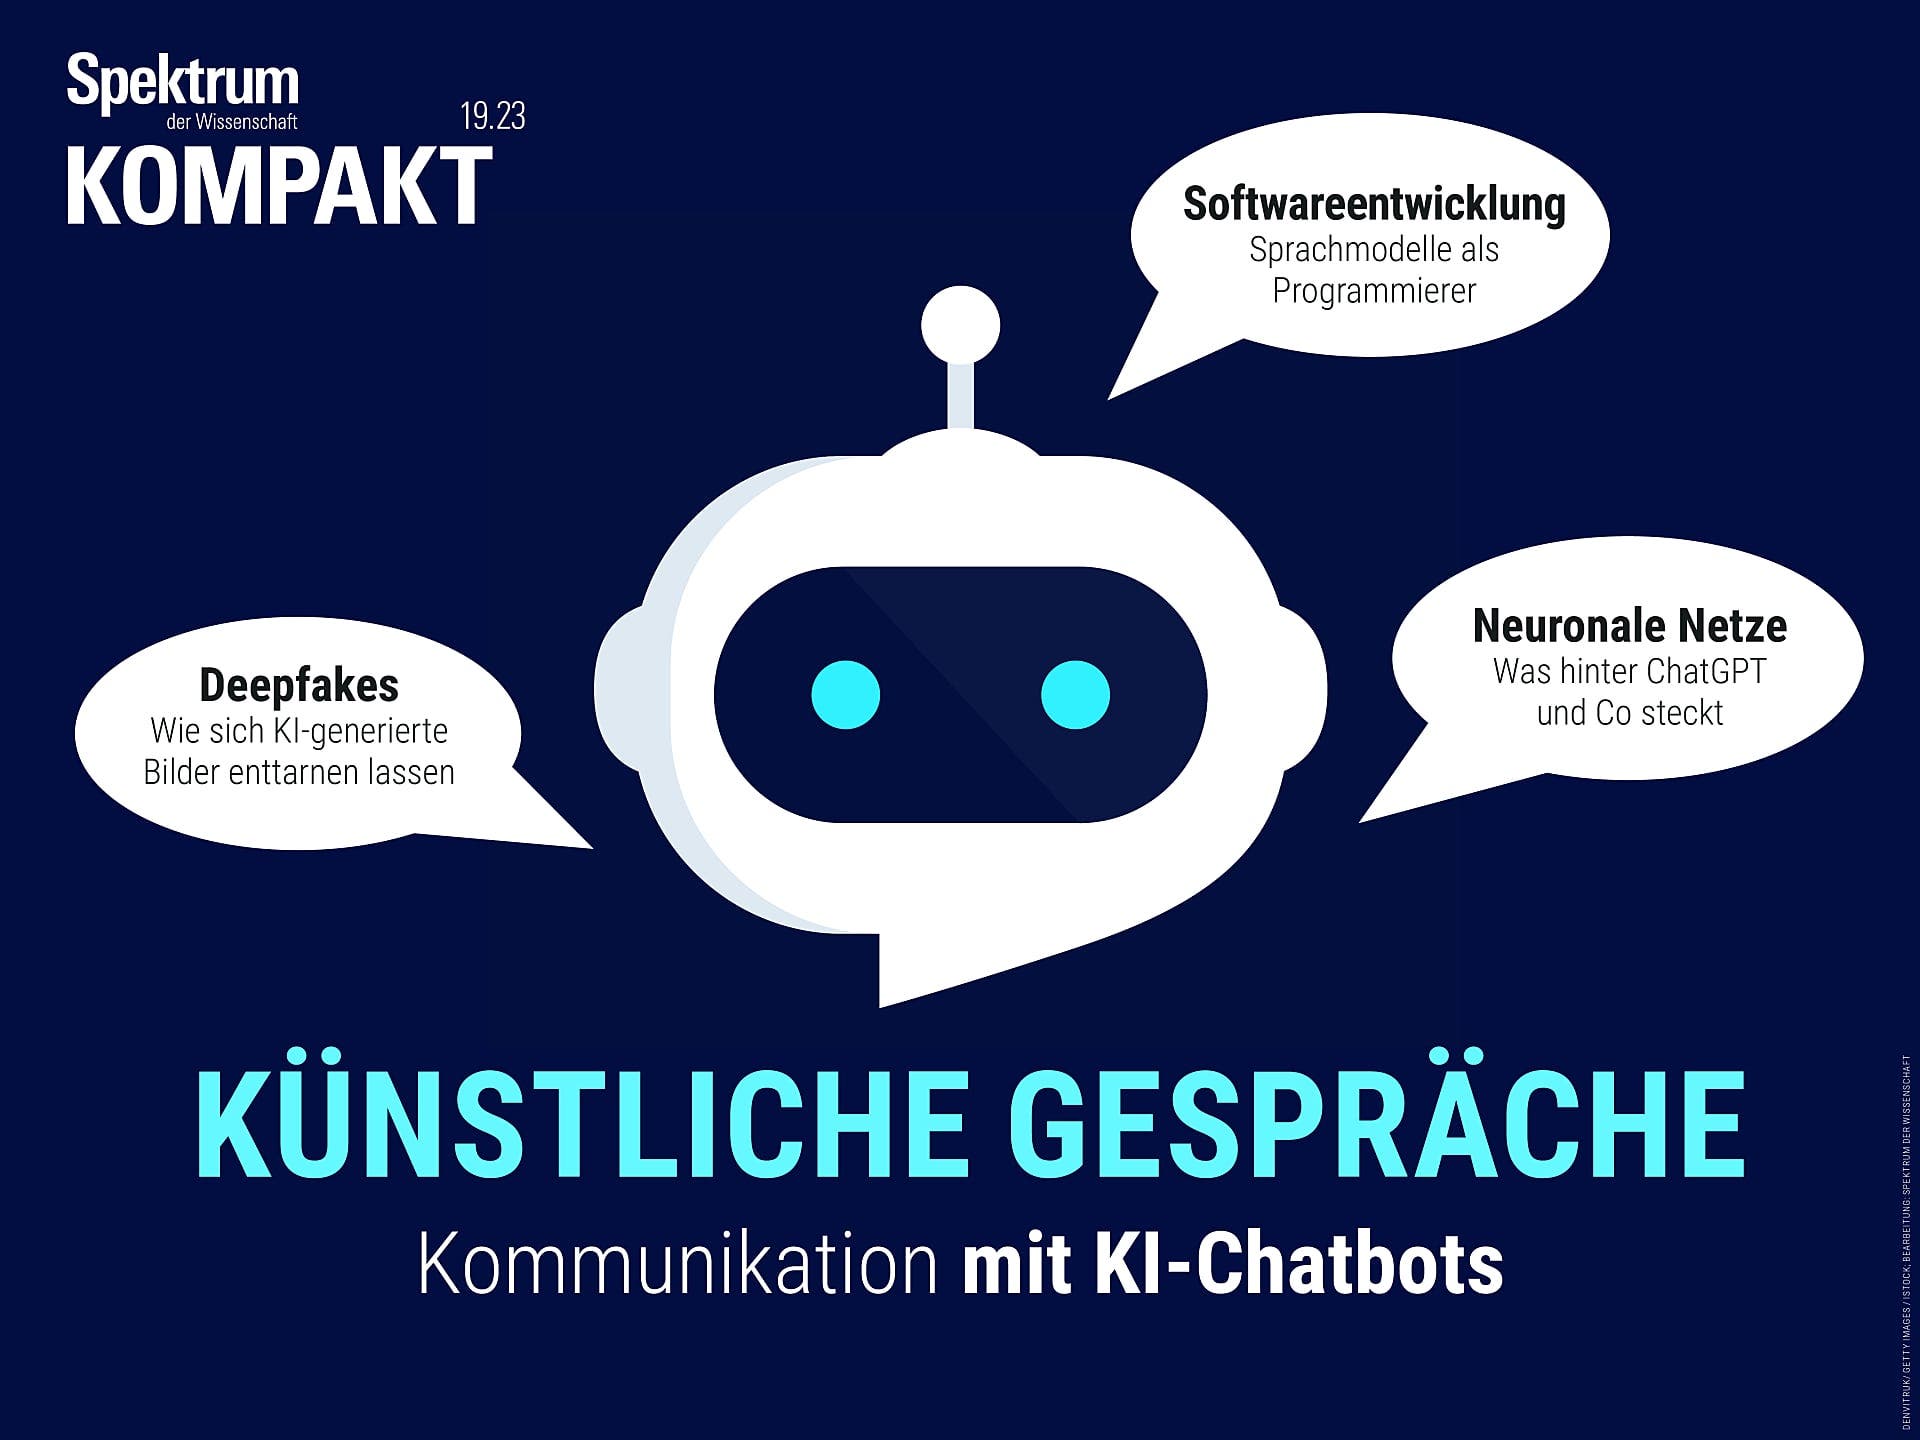 Künstliche Gespräche - Kommunikation mit KI-Chatbots